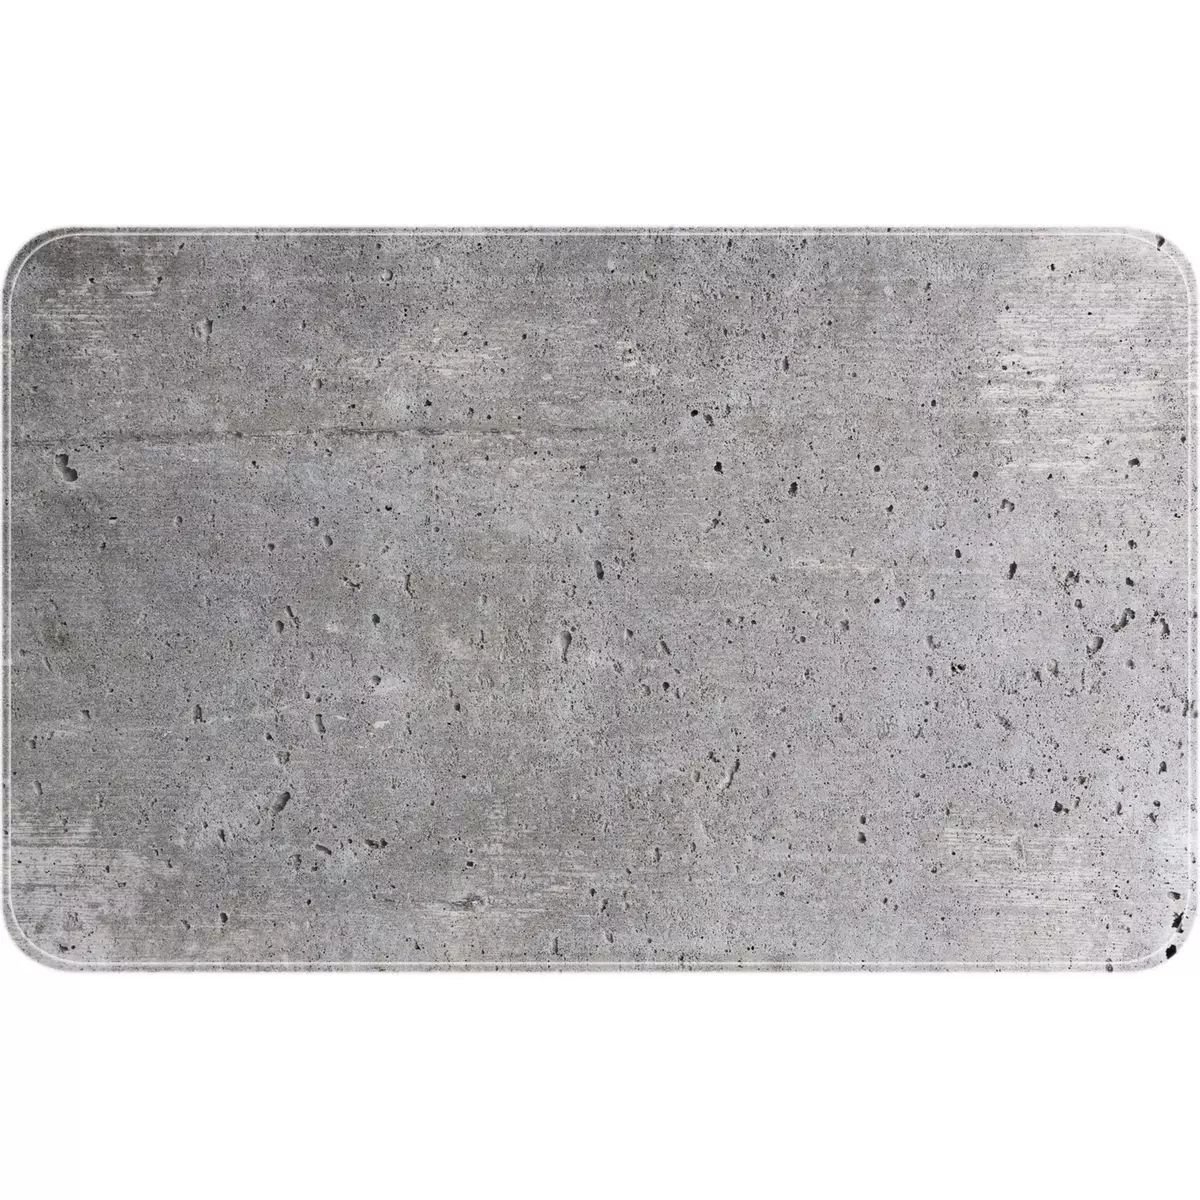 Wenko Tapis de baignoire antidérapant design ciment Concrete - L. 70 x l. 40 cm - Gris